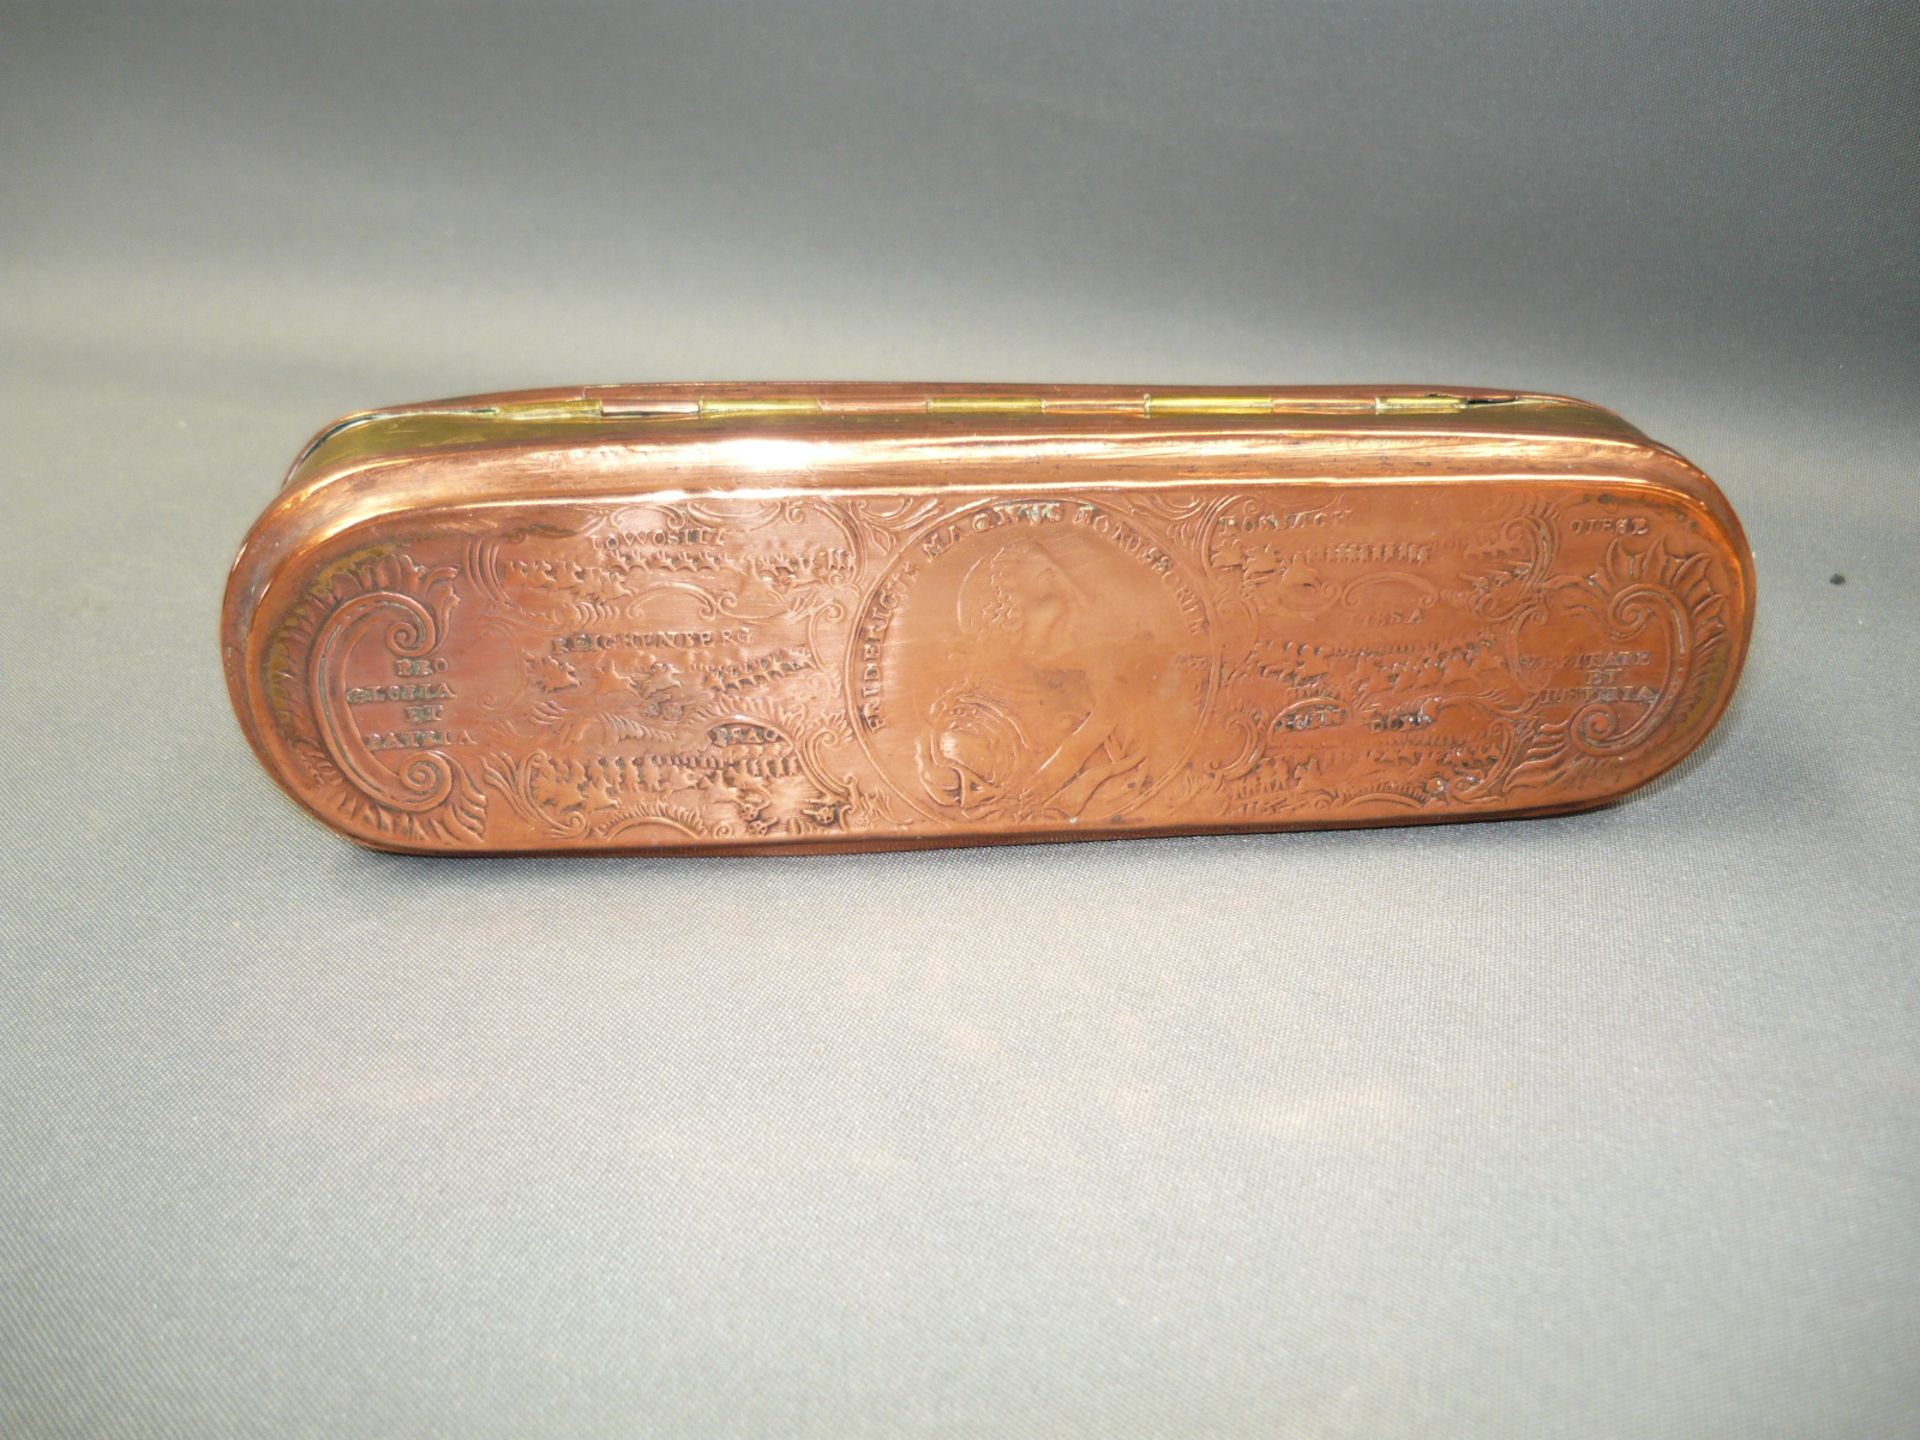 Schnupftabakdose. Kupfer mit reichem Dekor. Antik. L. 16cm.